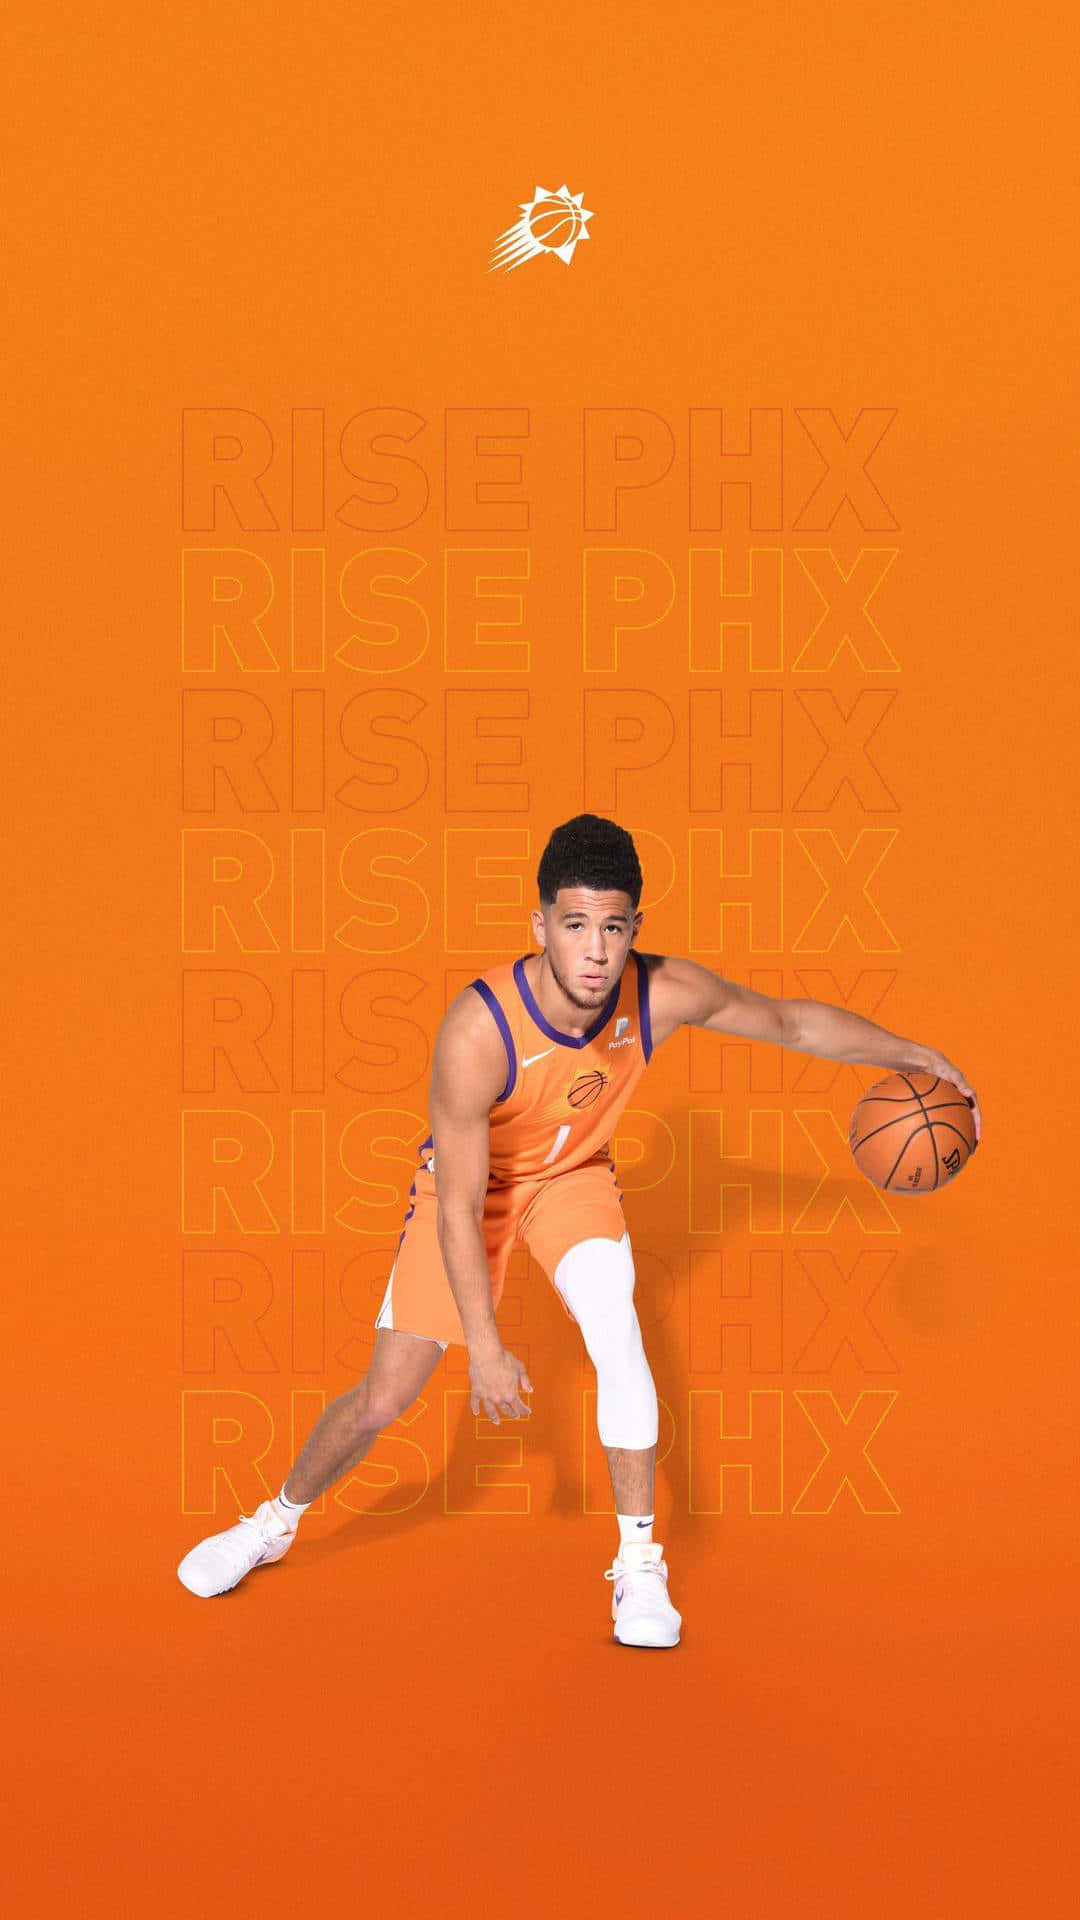 En mand i orange og hvid holder en basketball. Wallpaper